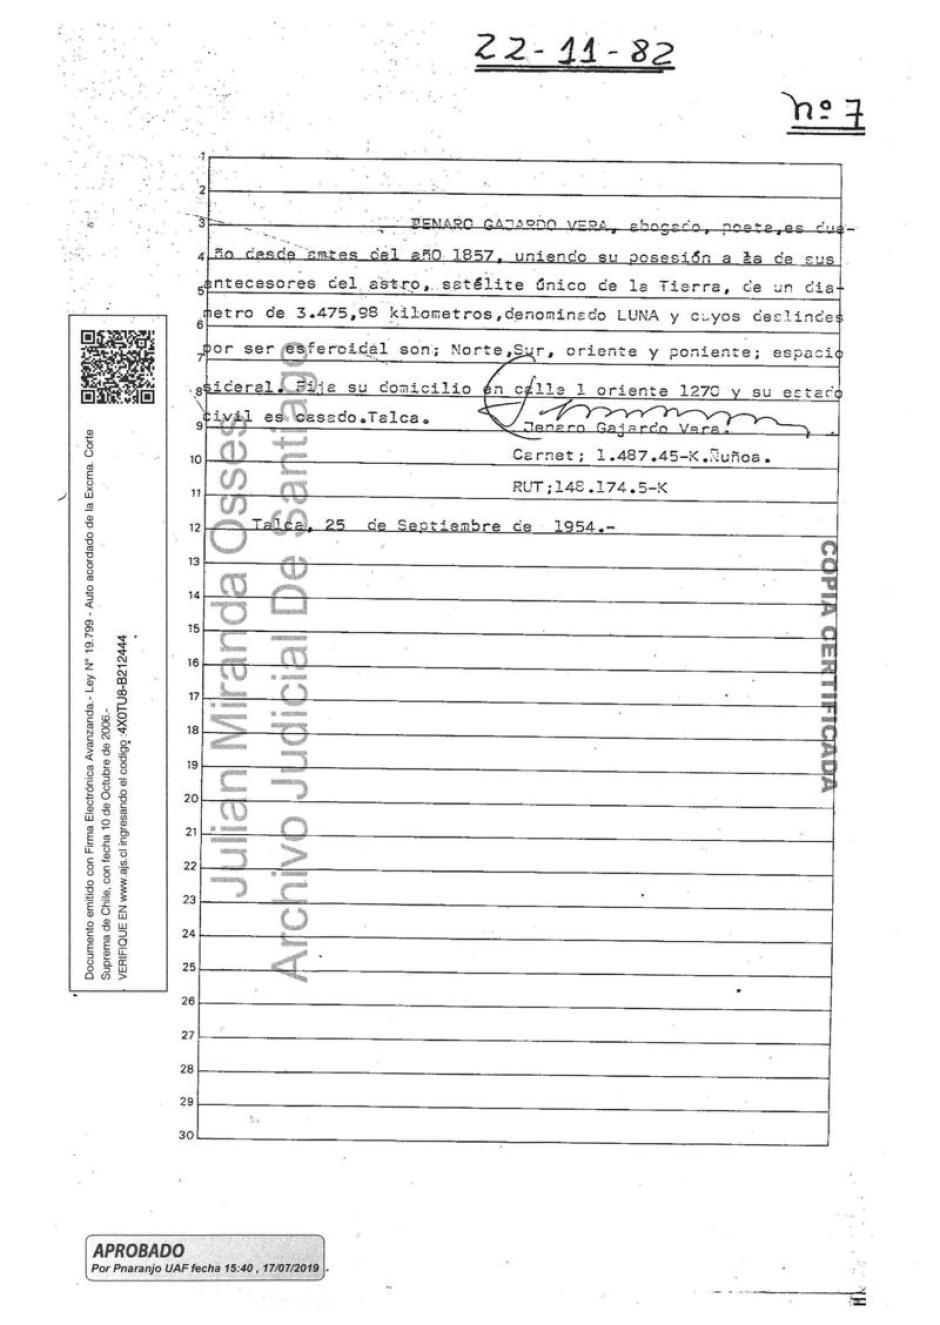 Documento notarial con el que Jenaro Gajardo registró la Luna a su nombre